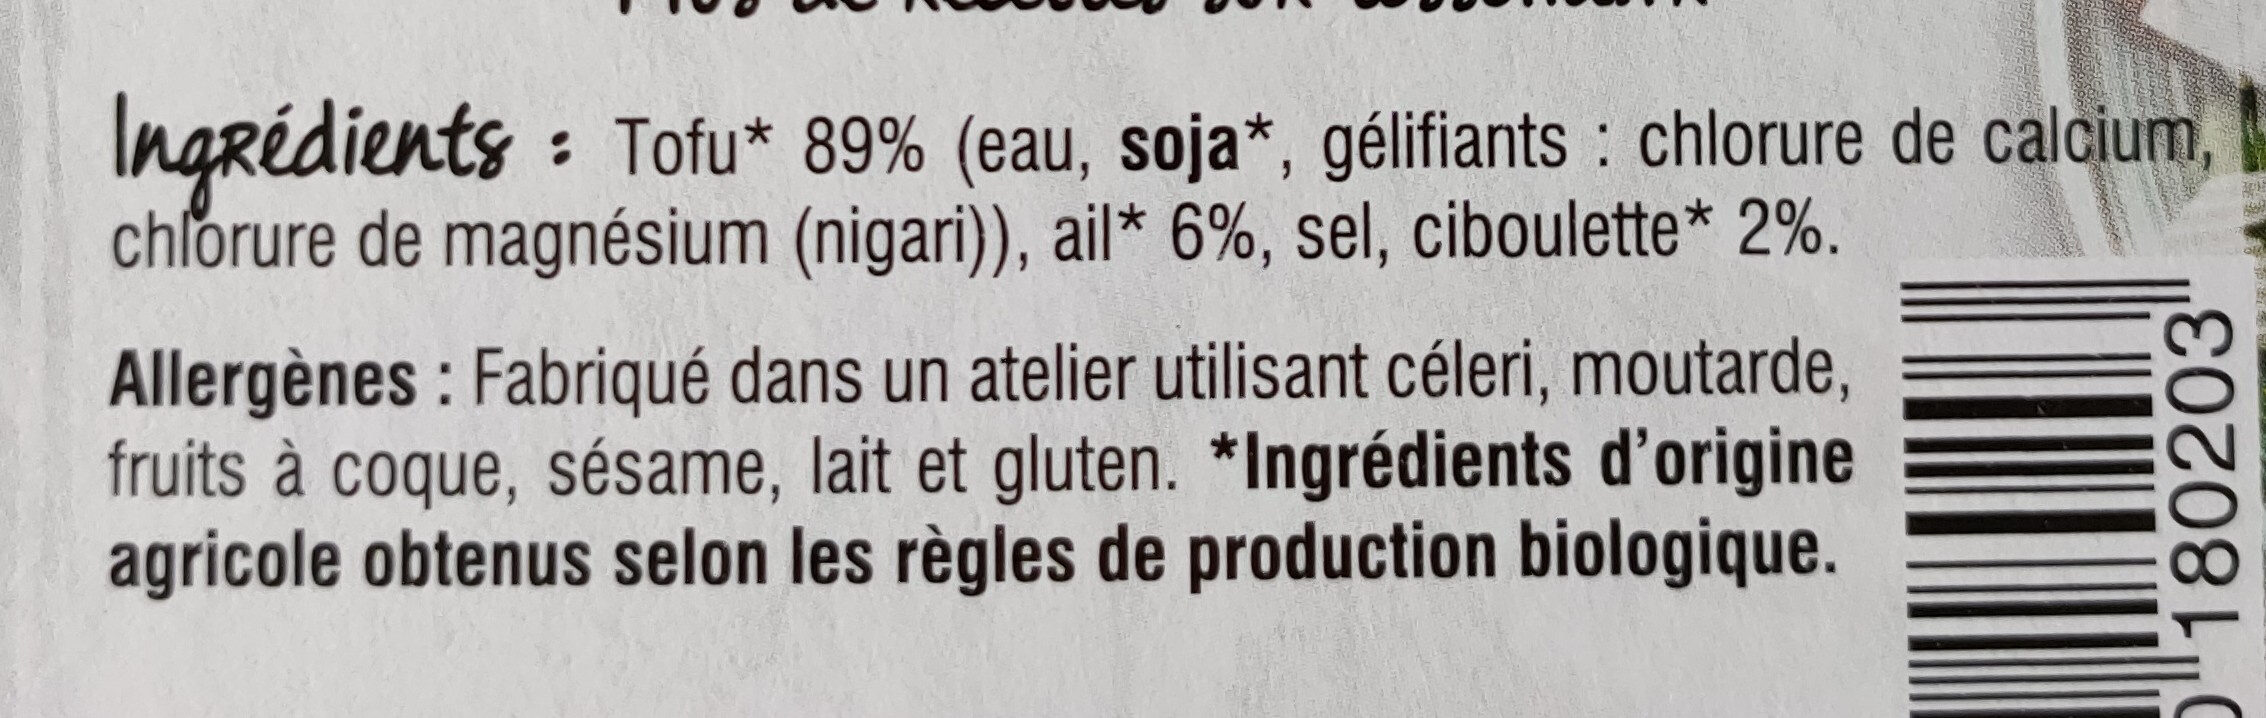 Tofu Ail & Ciboulette - Ingrédients